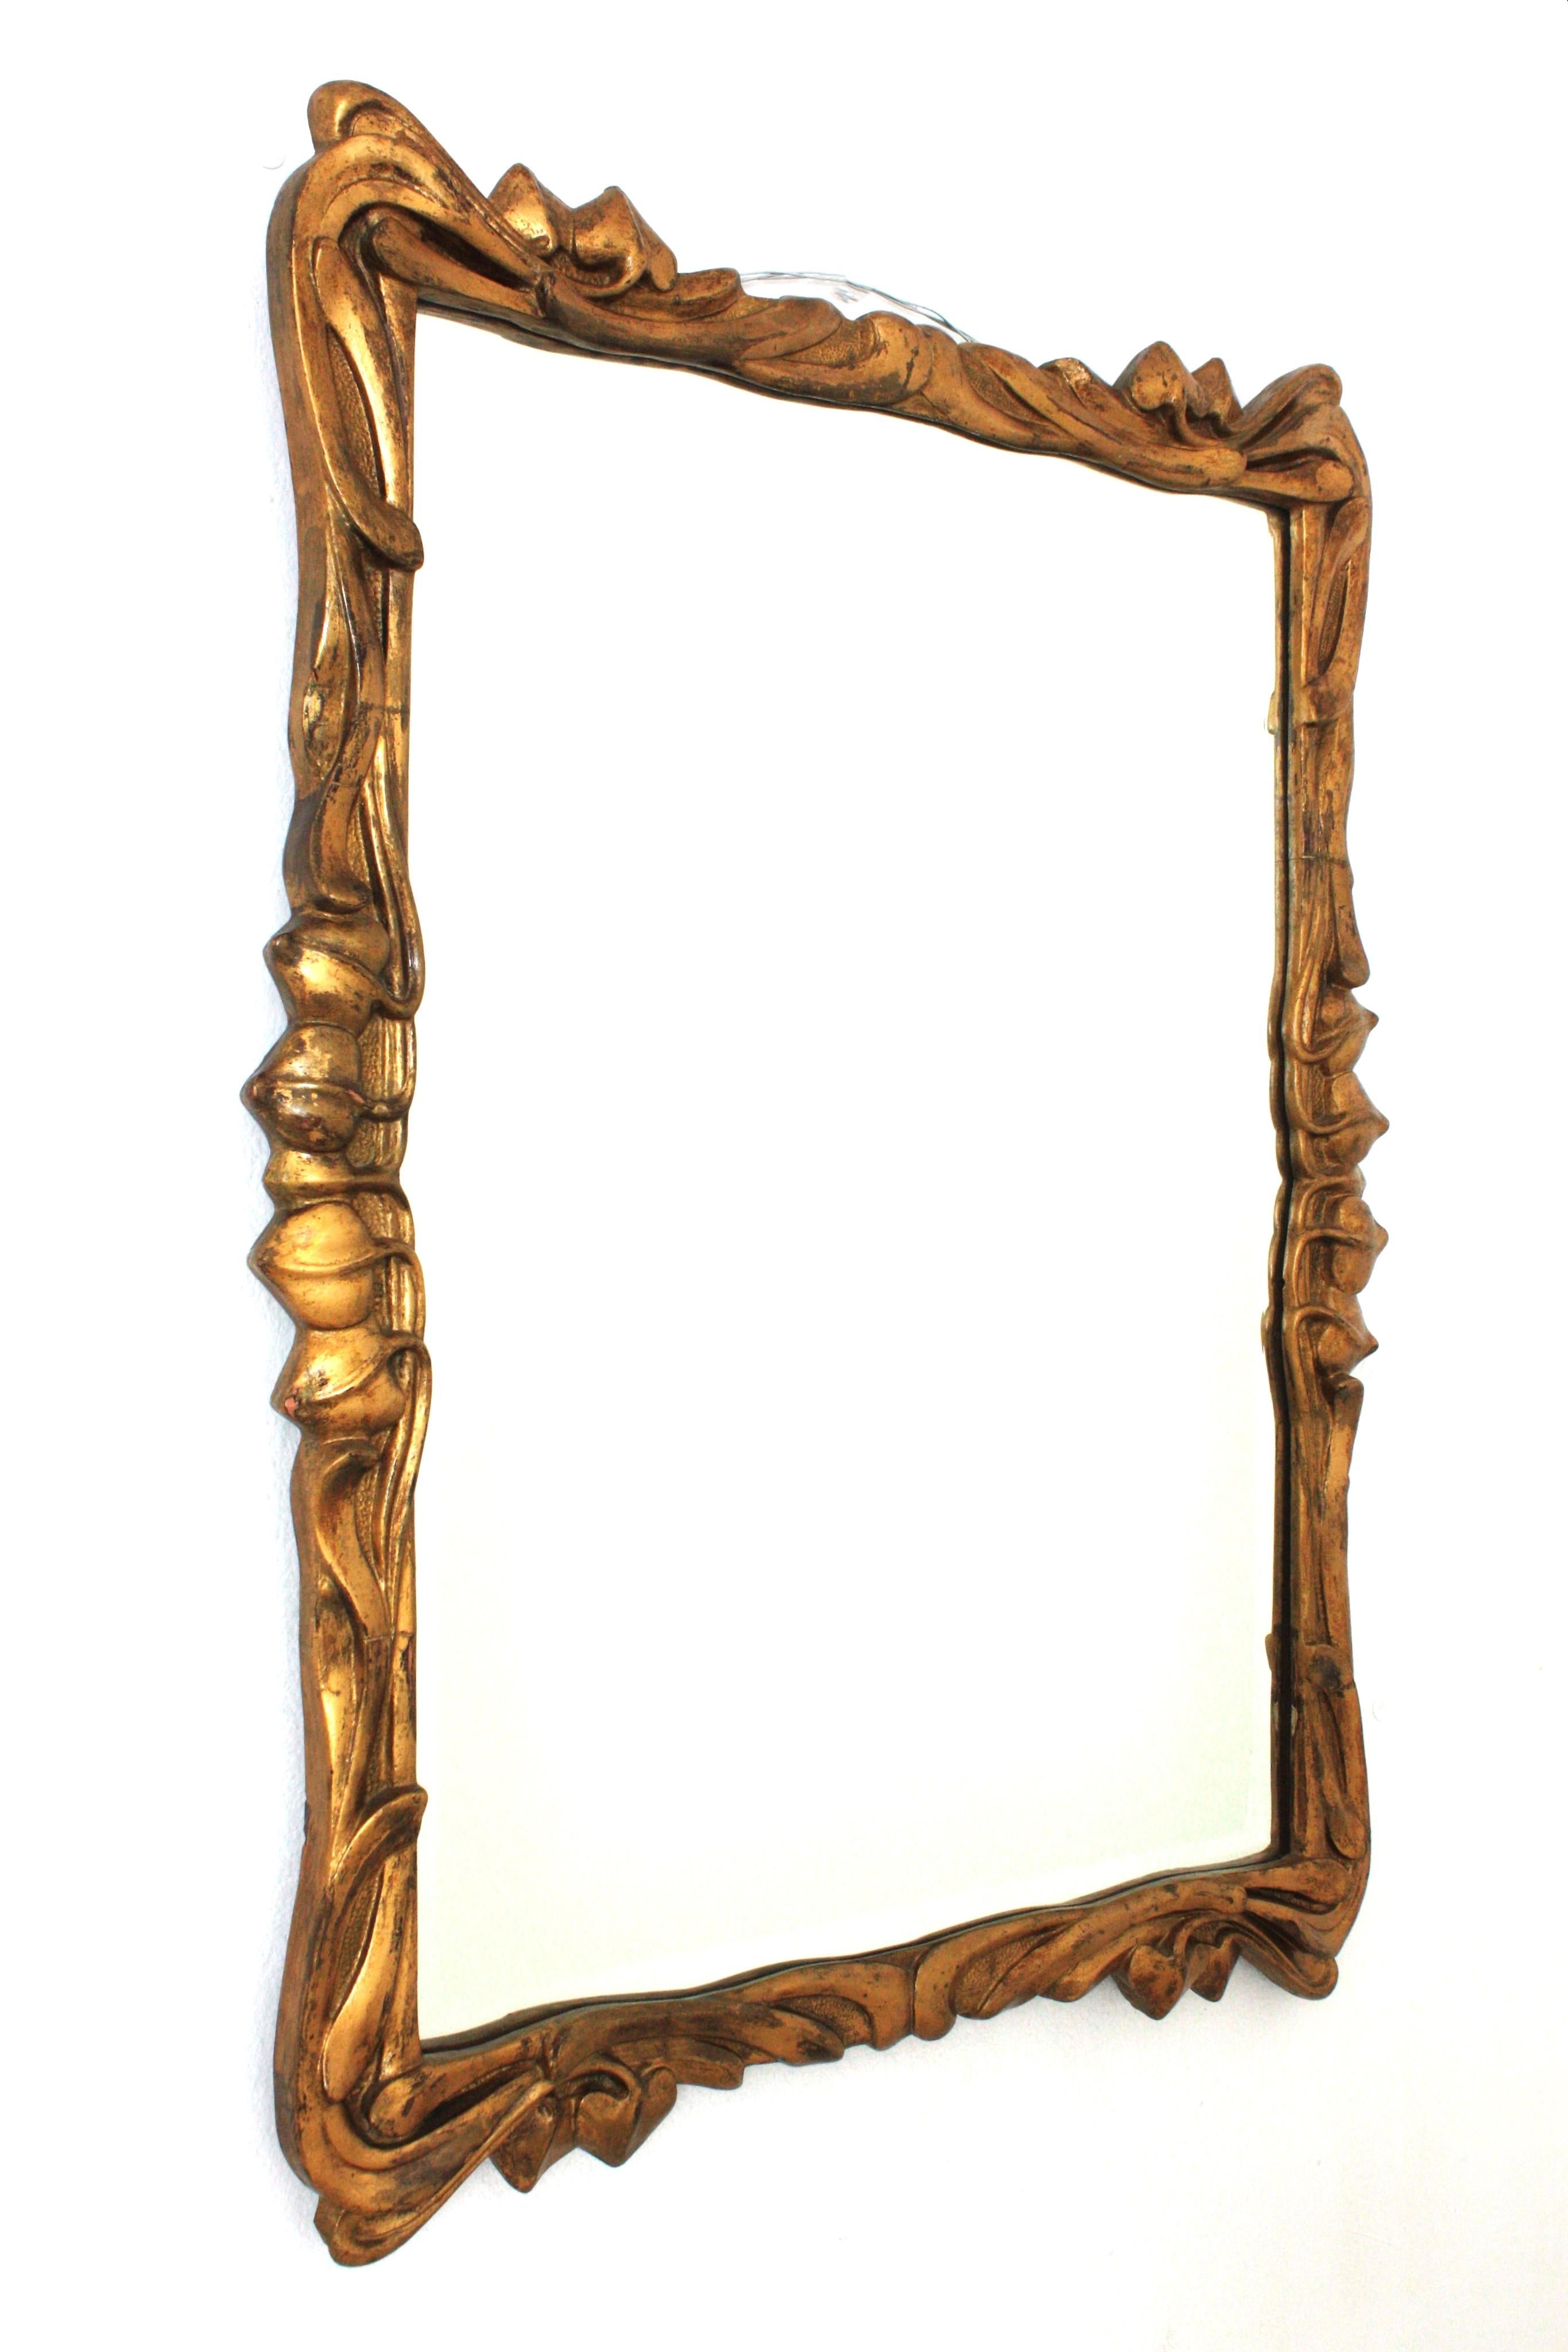 Miroir rectangulaire Art Nouveau avec cadre de feuillage, bois, feuille d'or

Magnifique miroir Art Nouveau en bois finement sculpté. Espagne, années 1930
Bois sculpté et dorure à la feuille d'or.
Le cadre est finement sculpté de branches et de